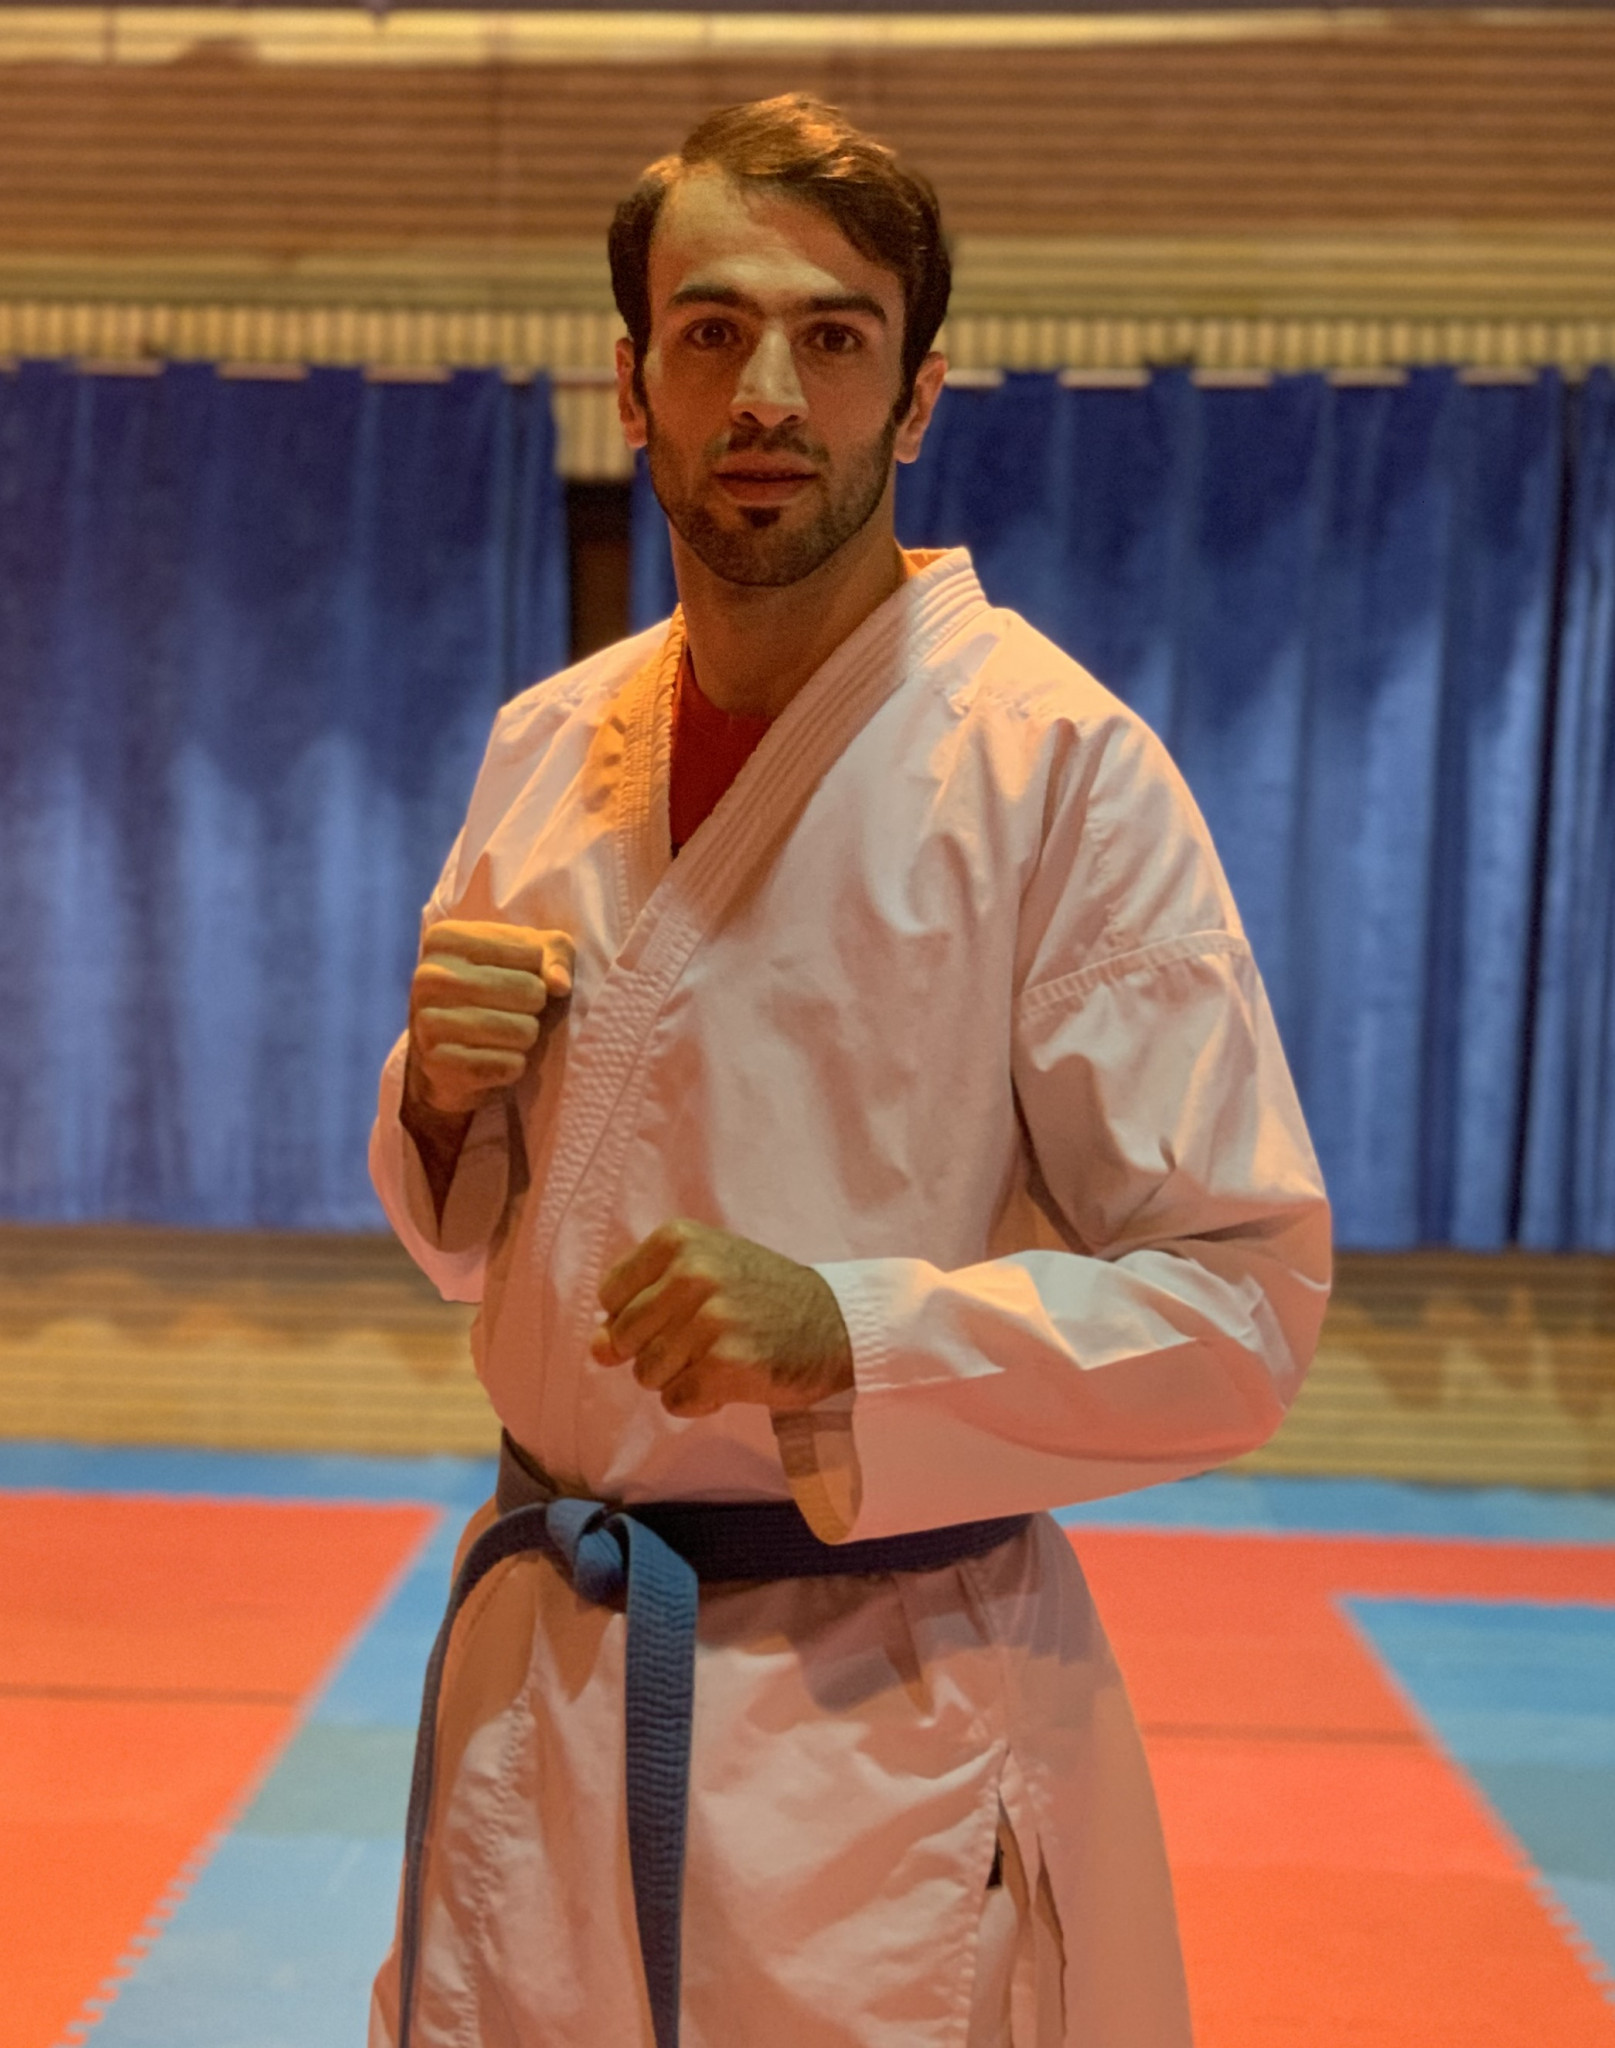 Iranian karateka Askari targeting gold at rearranged Tokyo 2020